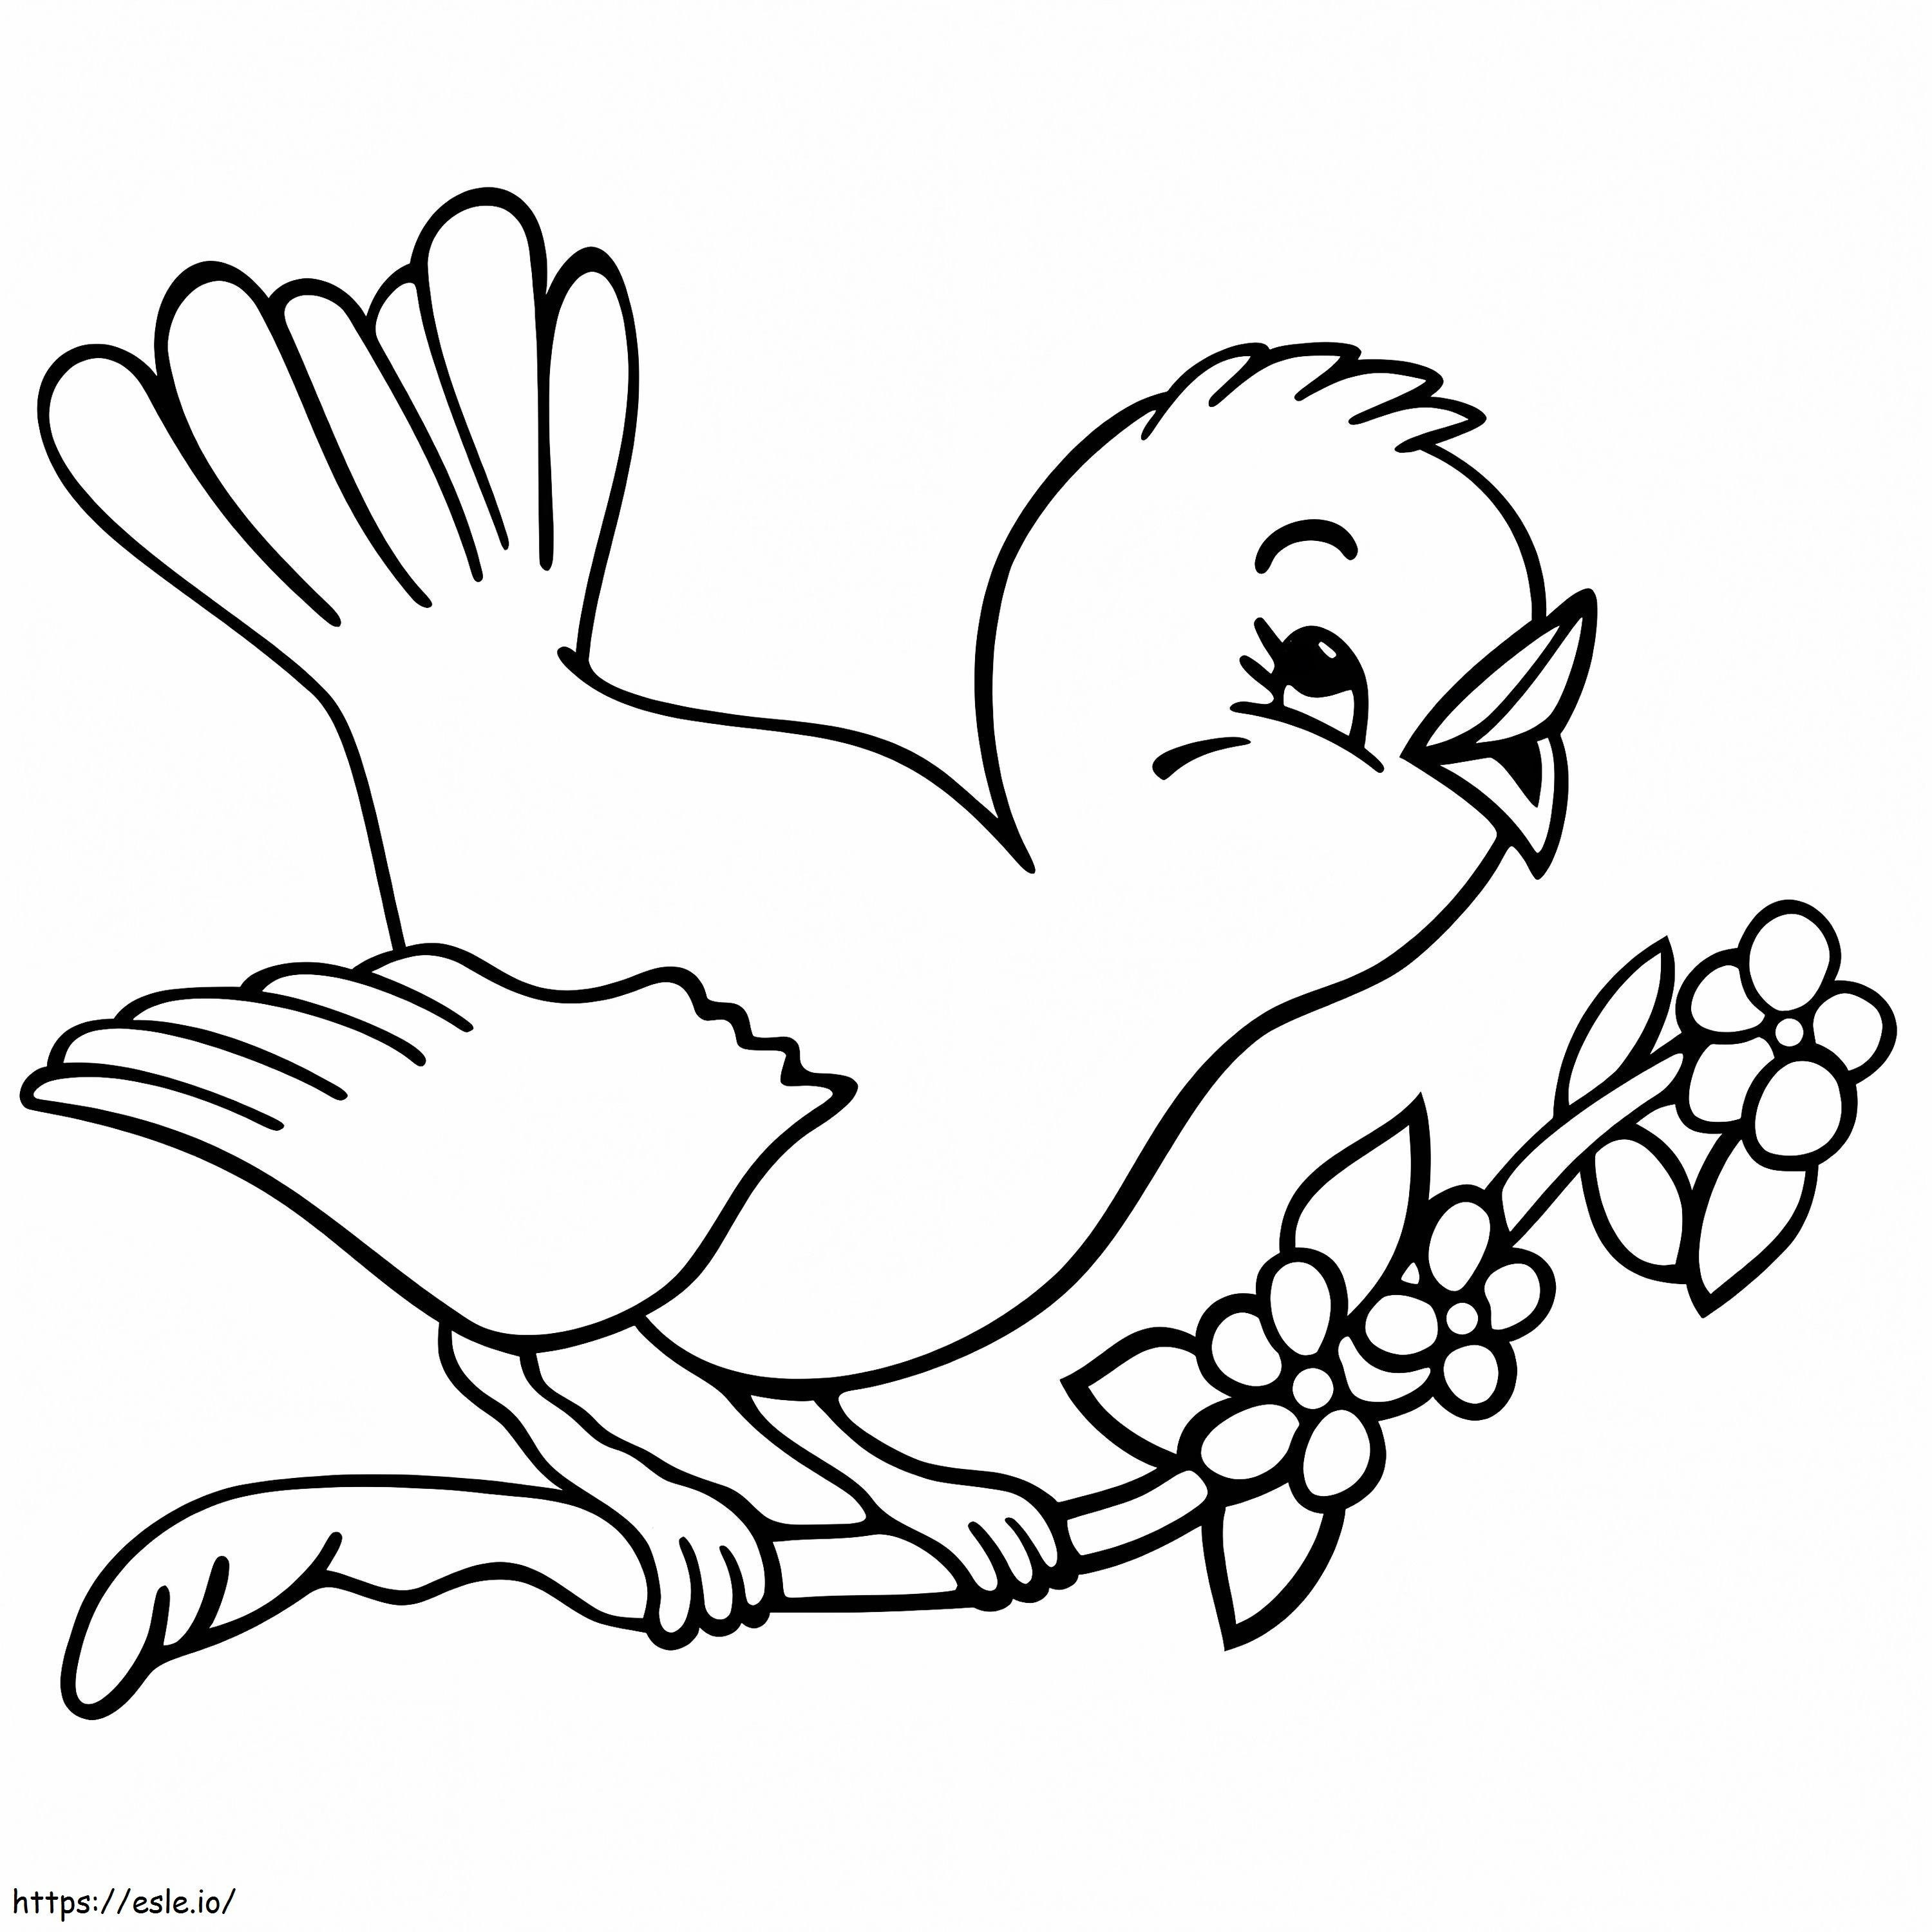 Coloriage  Oiseau sur branche A4 à imprimer dessin